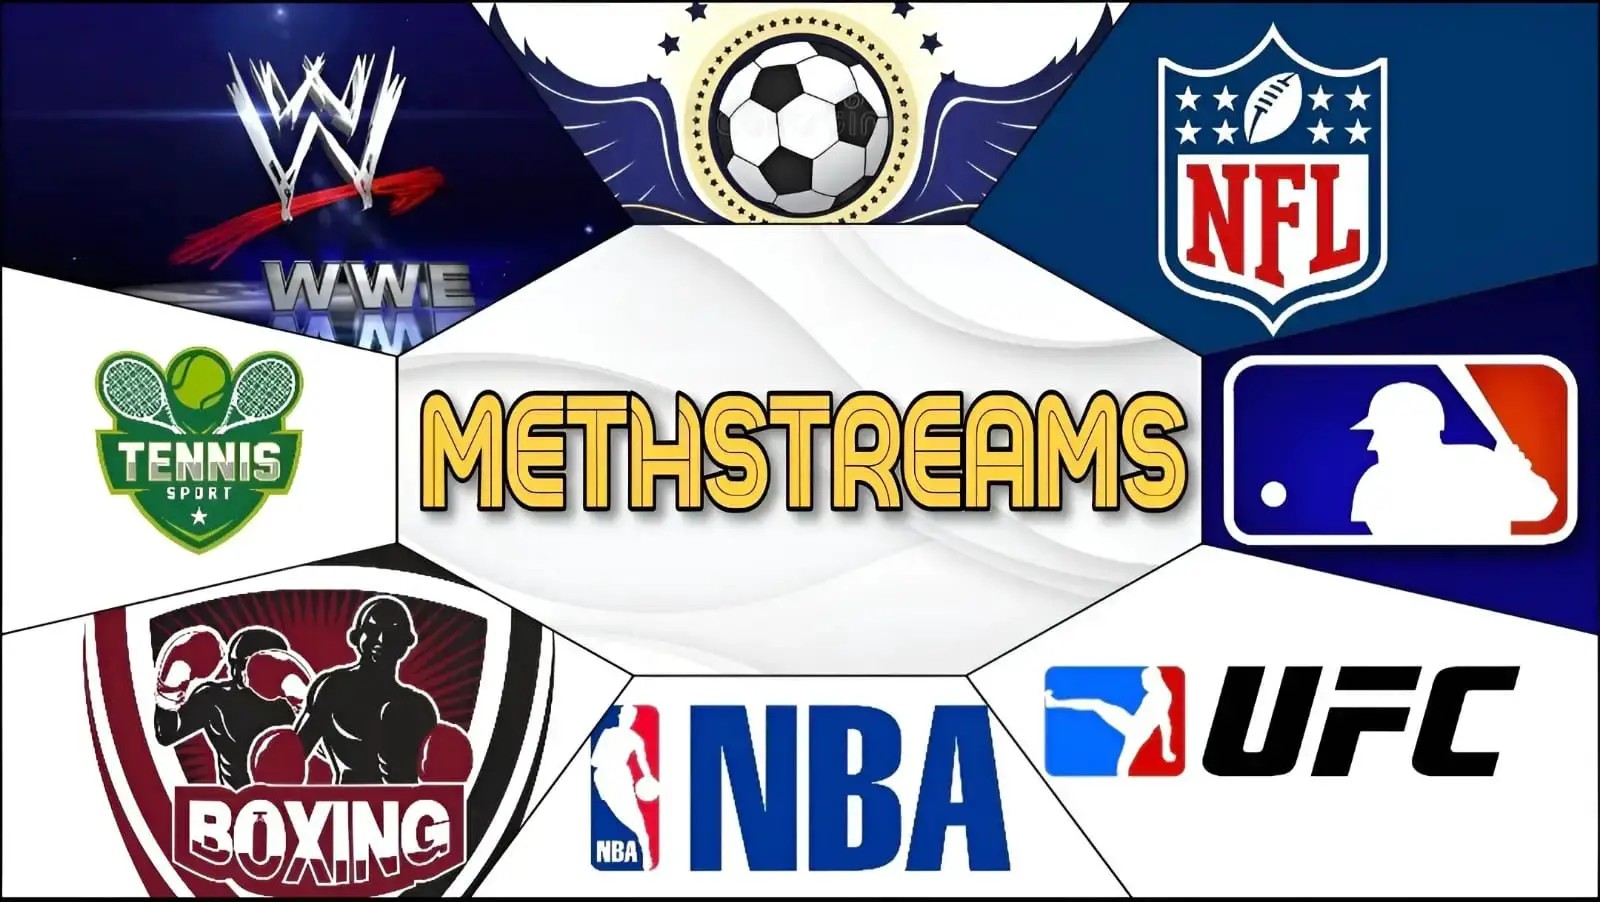 methstreams nfl network